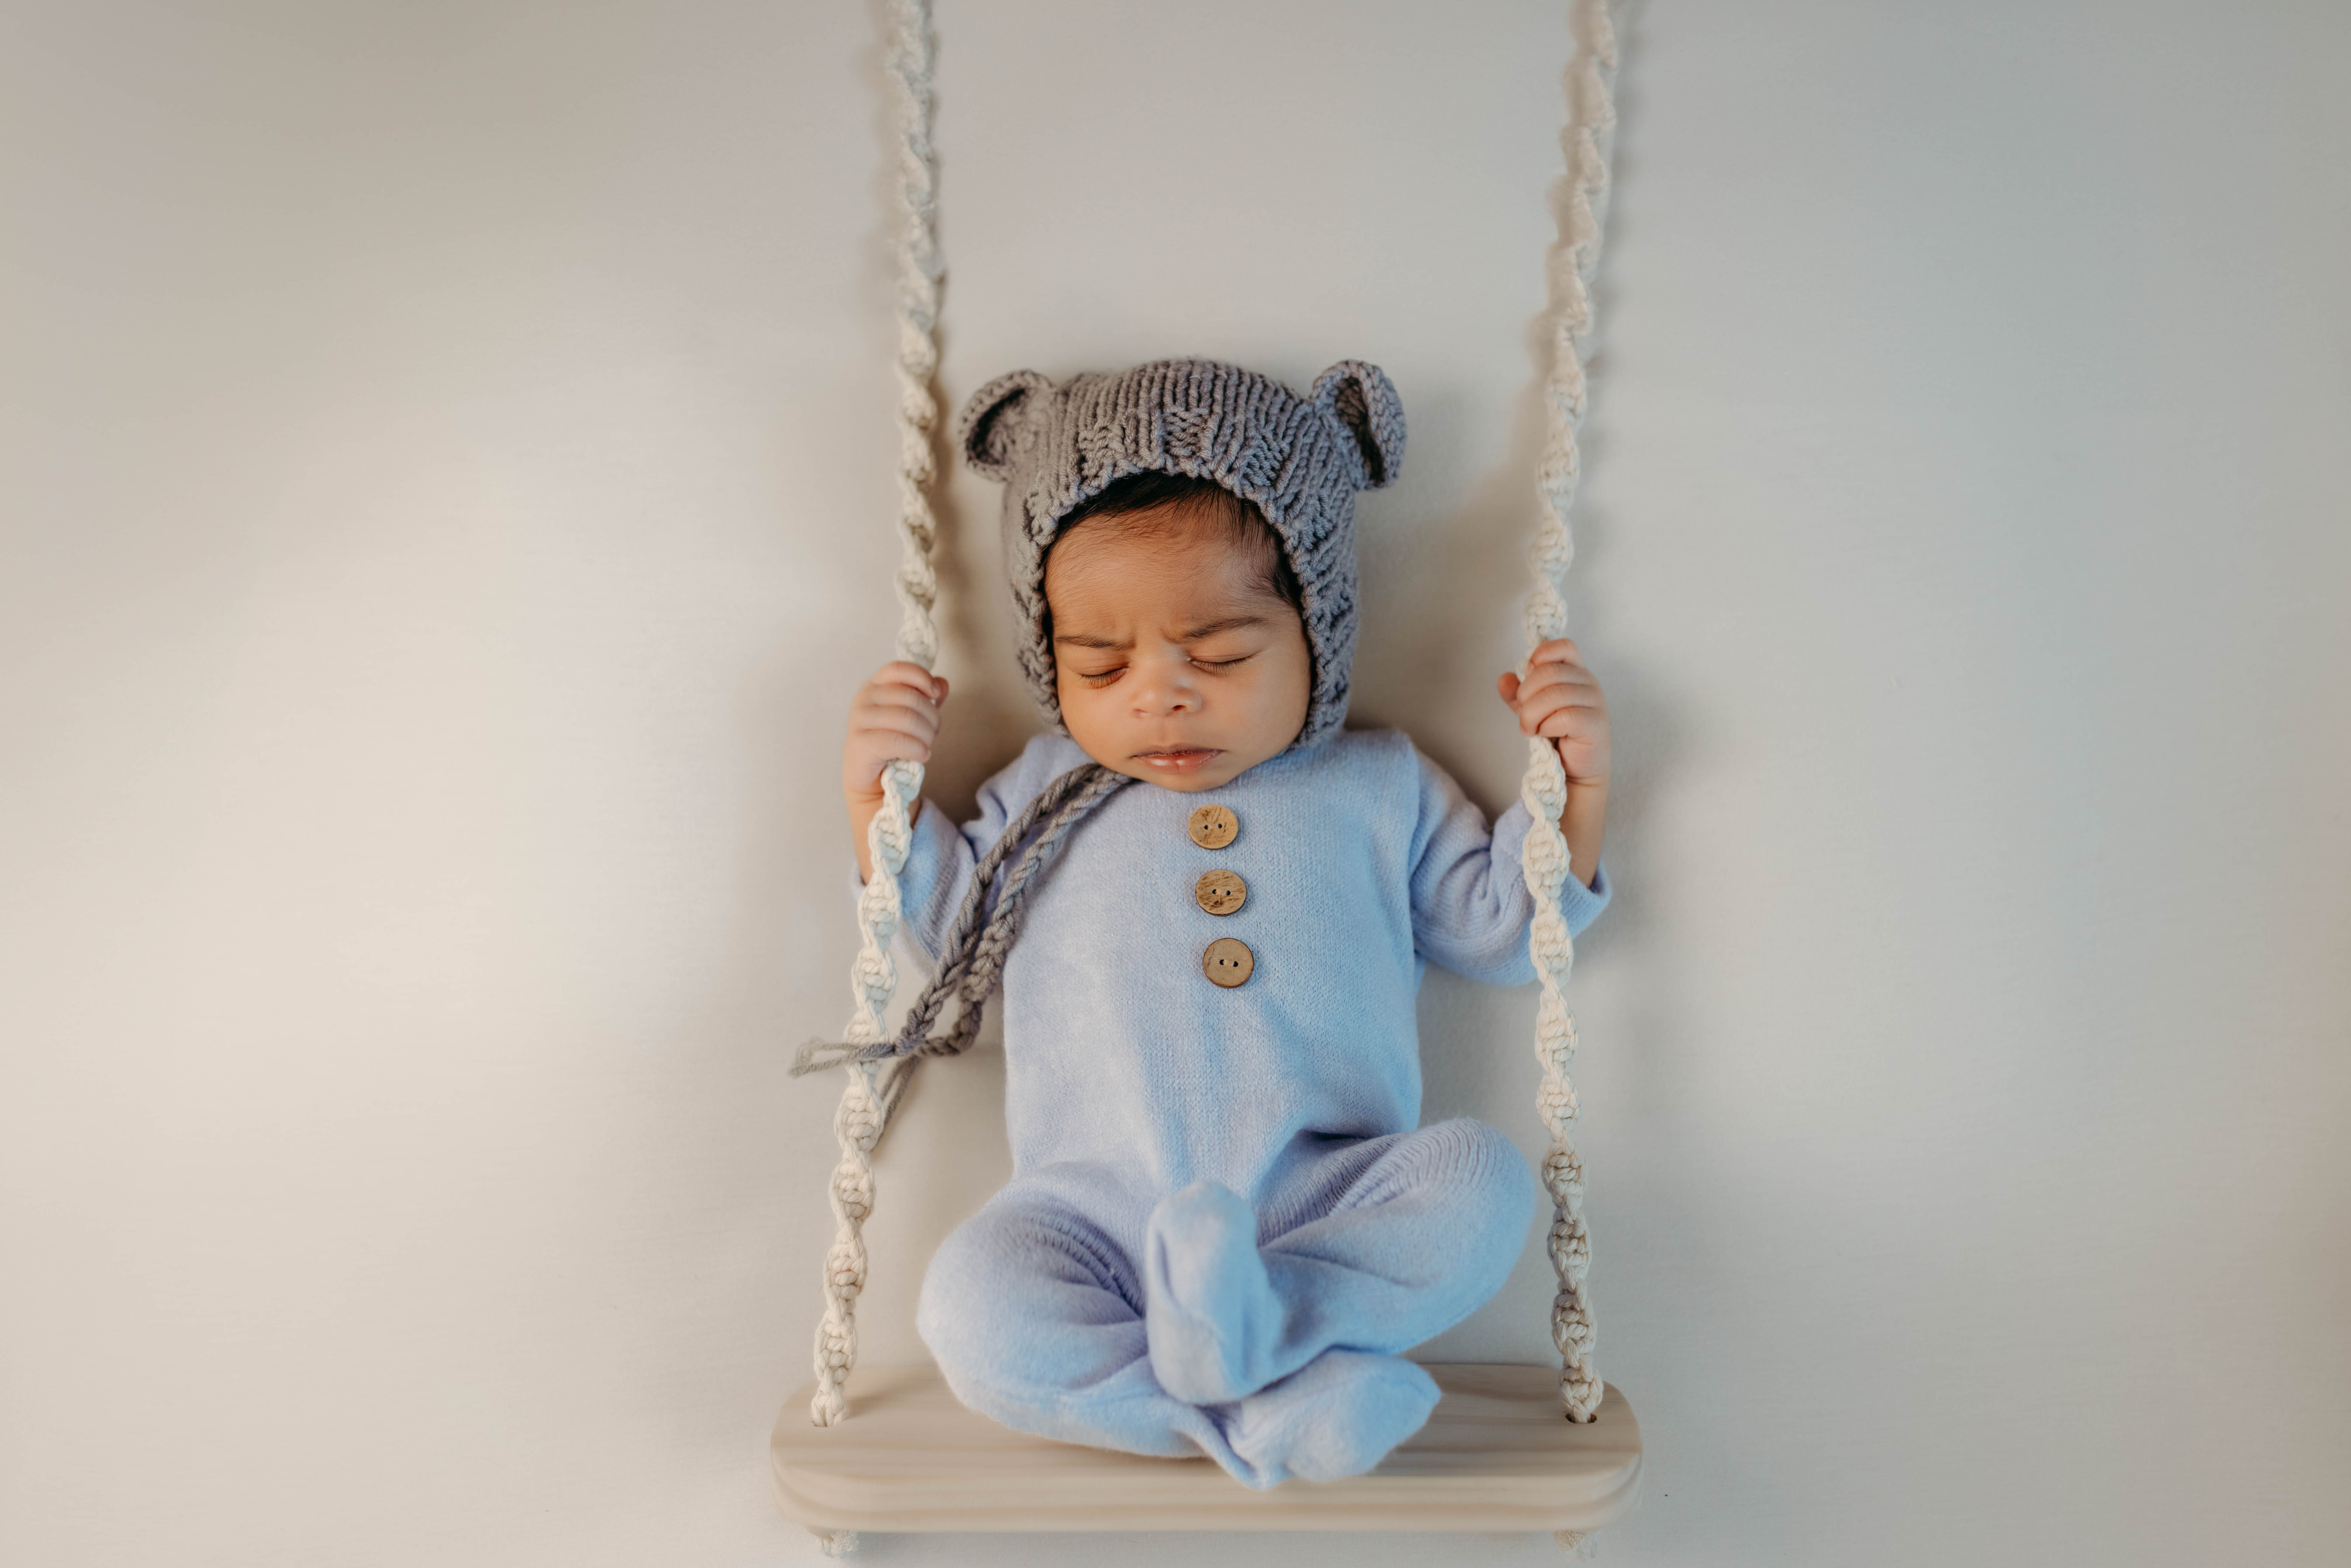 Newborn baby boy posed on a swing with teddy bear bonnet